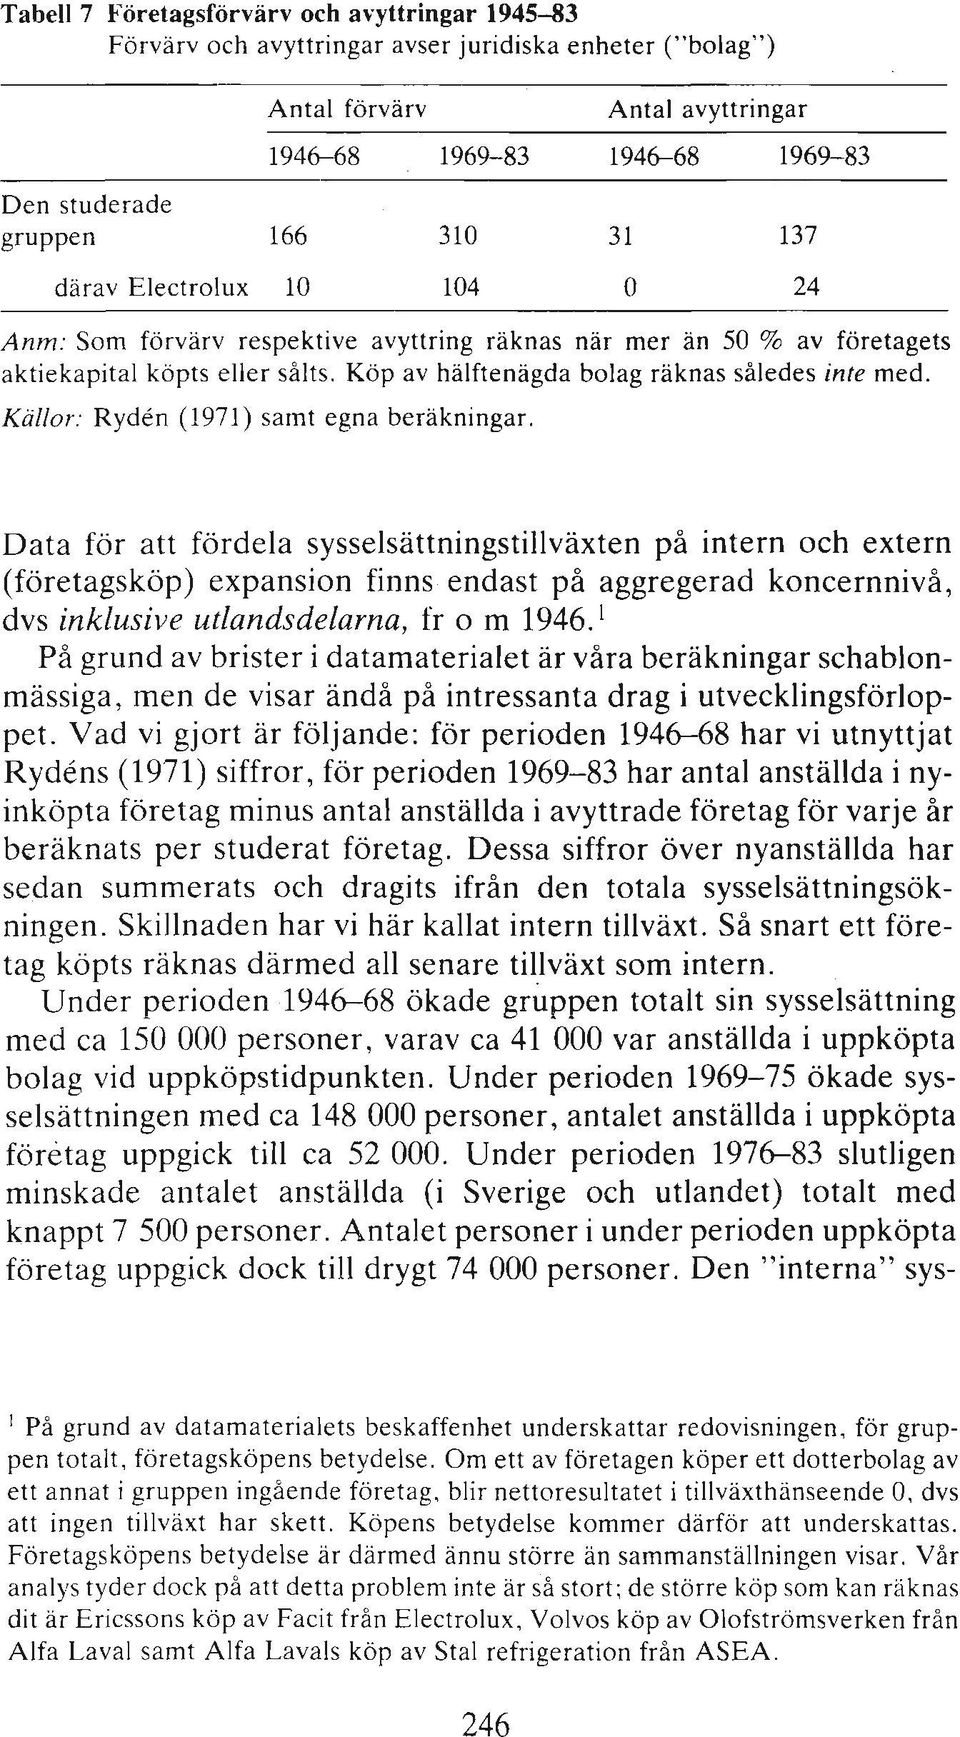 Källor: Ryden (1971) saint egna beräkningar.